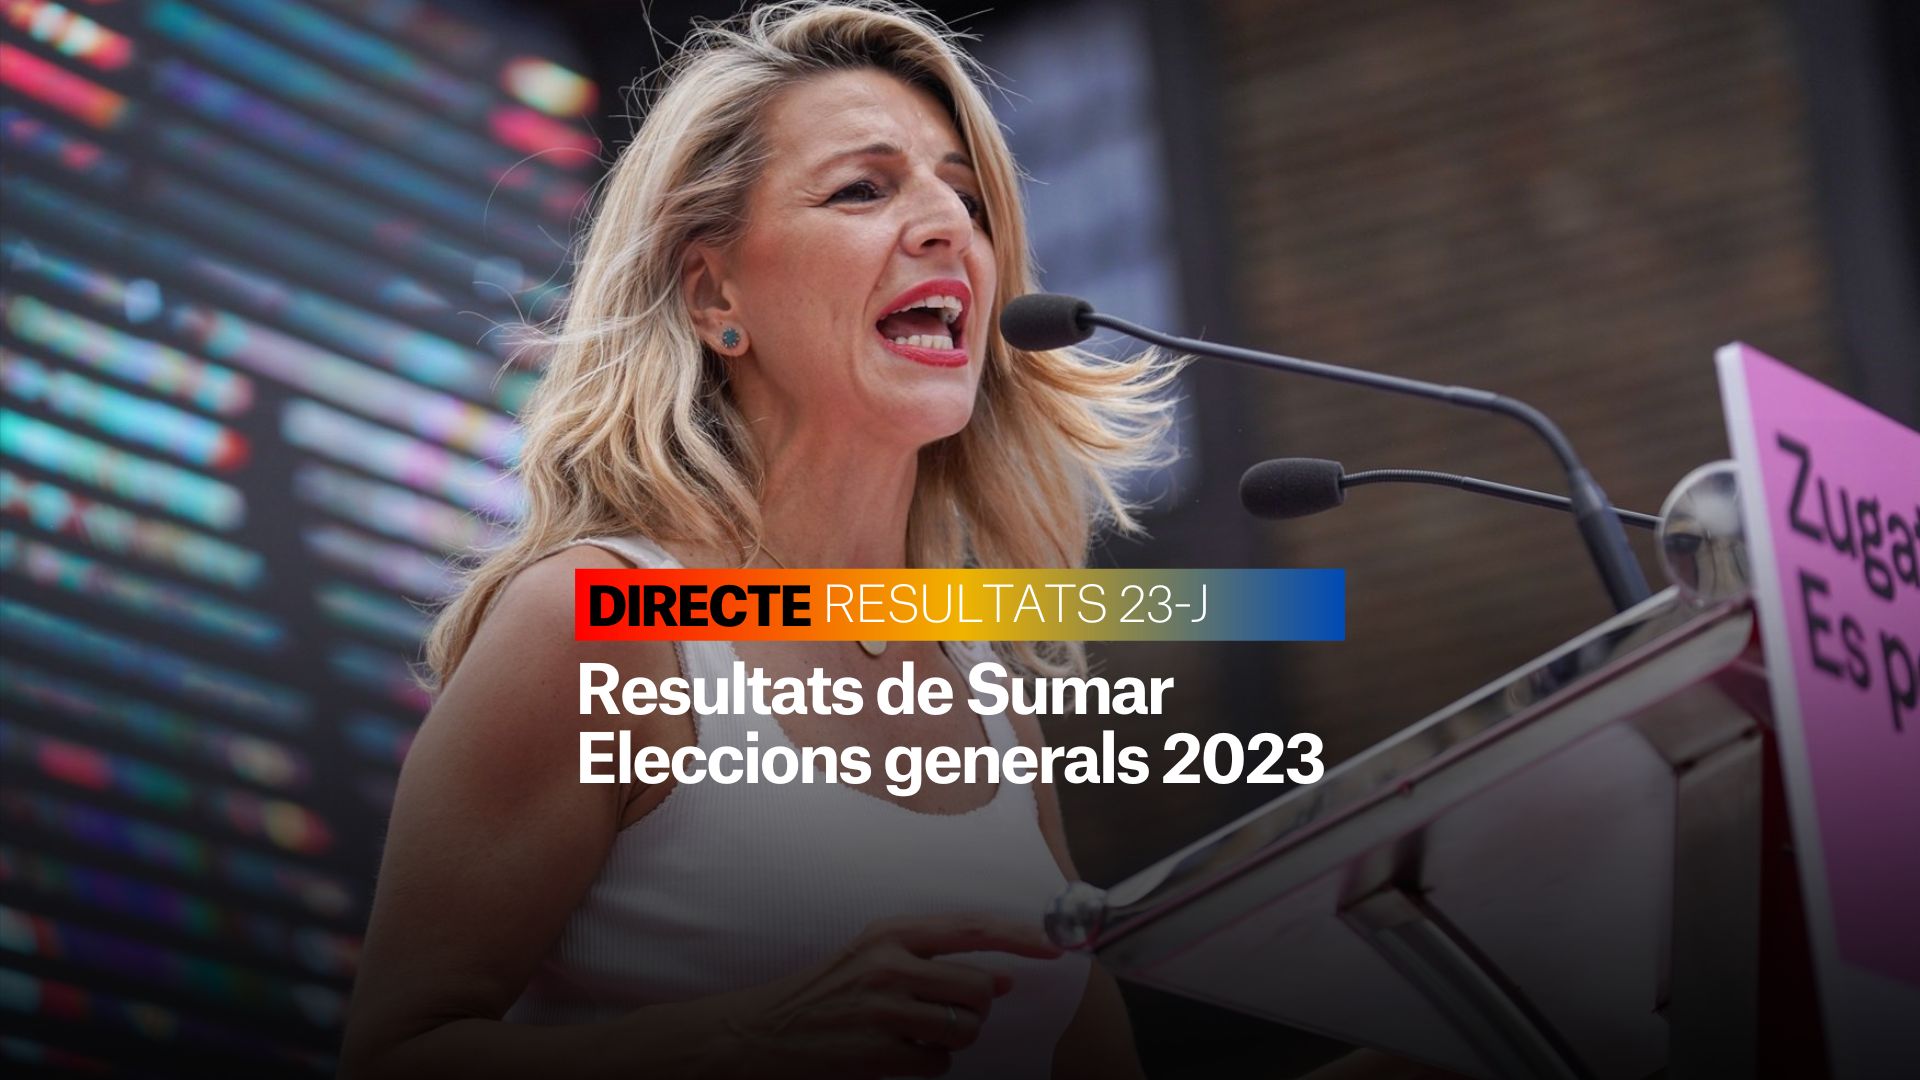 Resultats Sumar Eleccions Generals 2023: Com va Yolanda Díaz? | DIRECTE